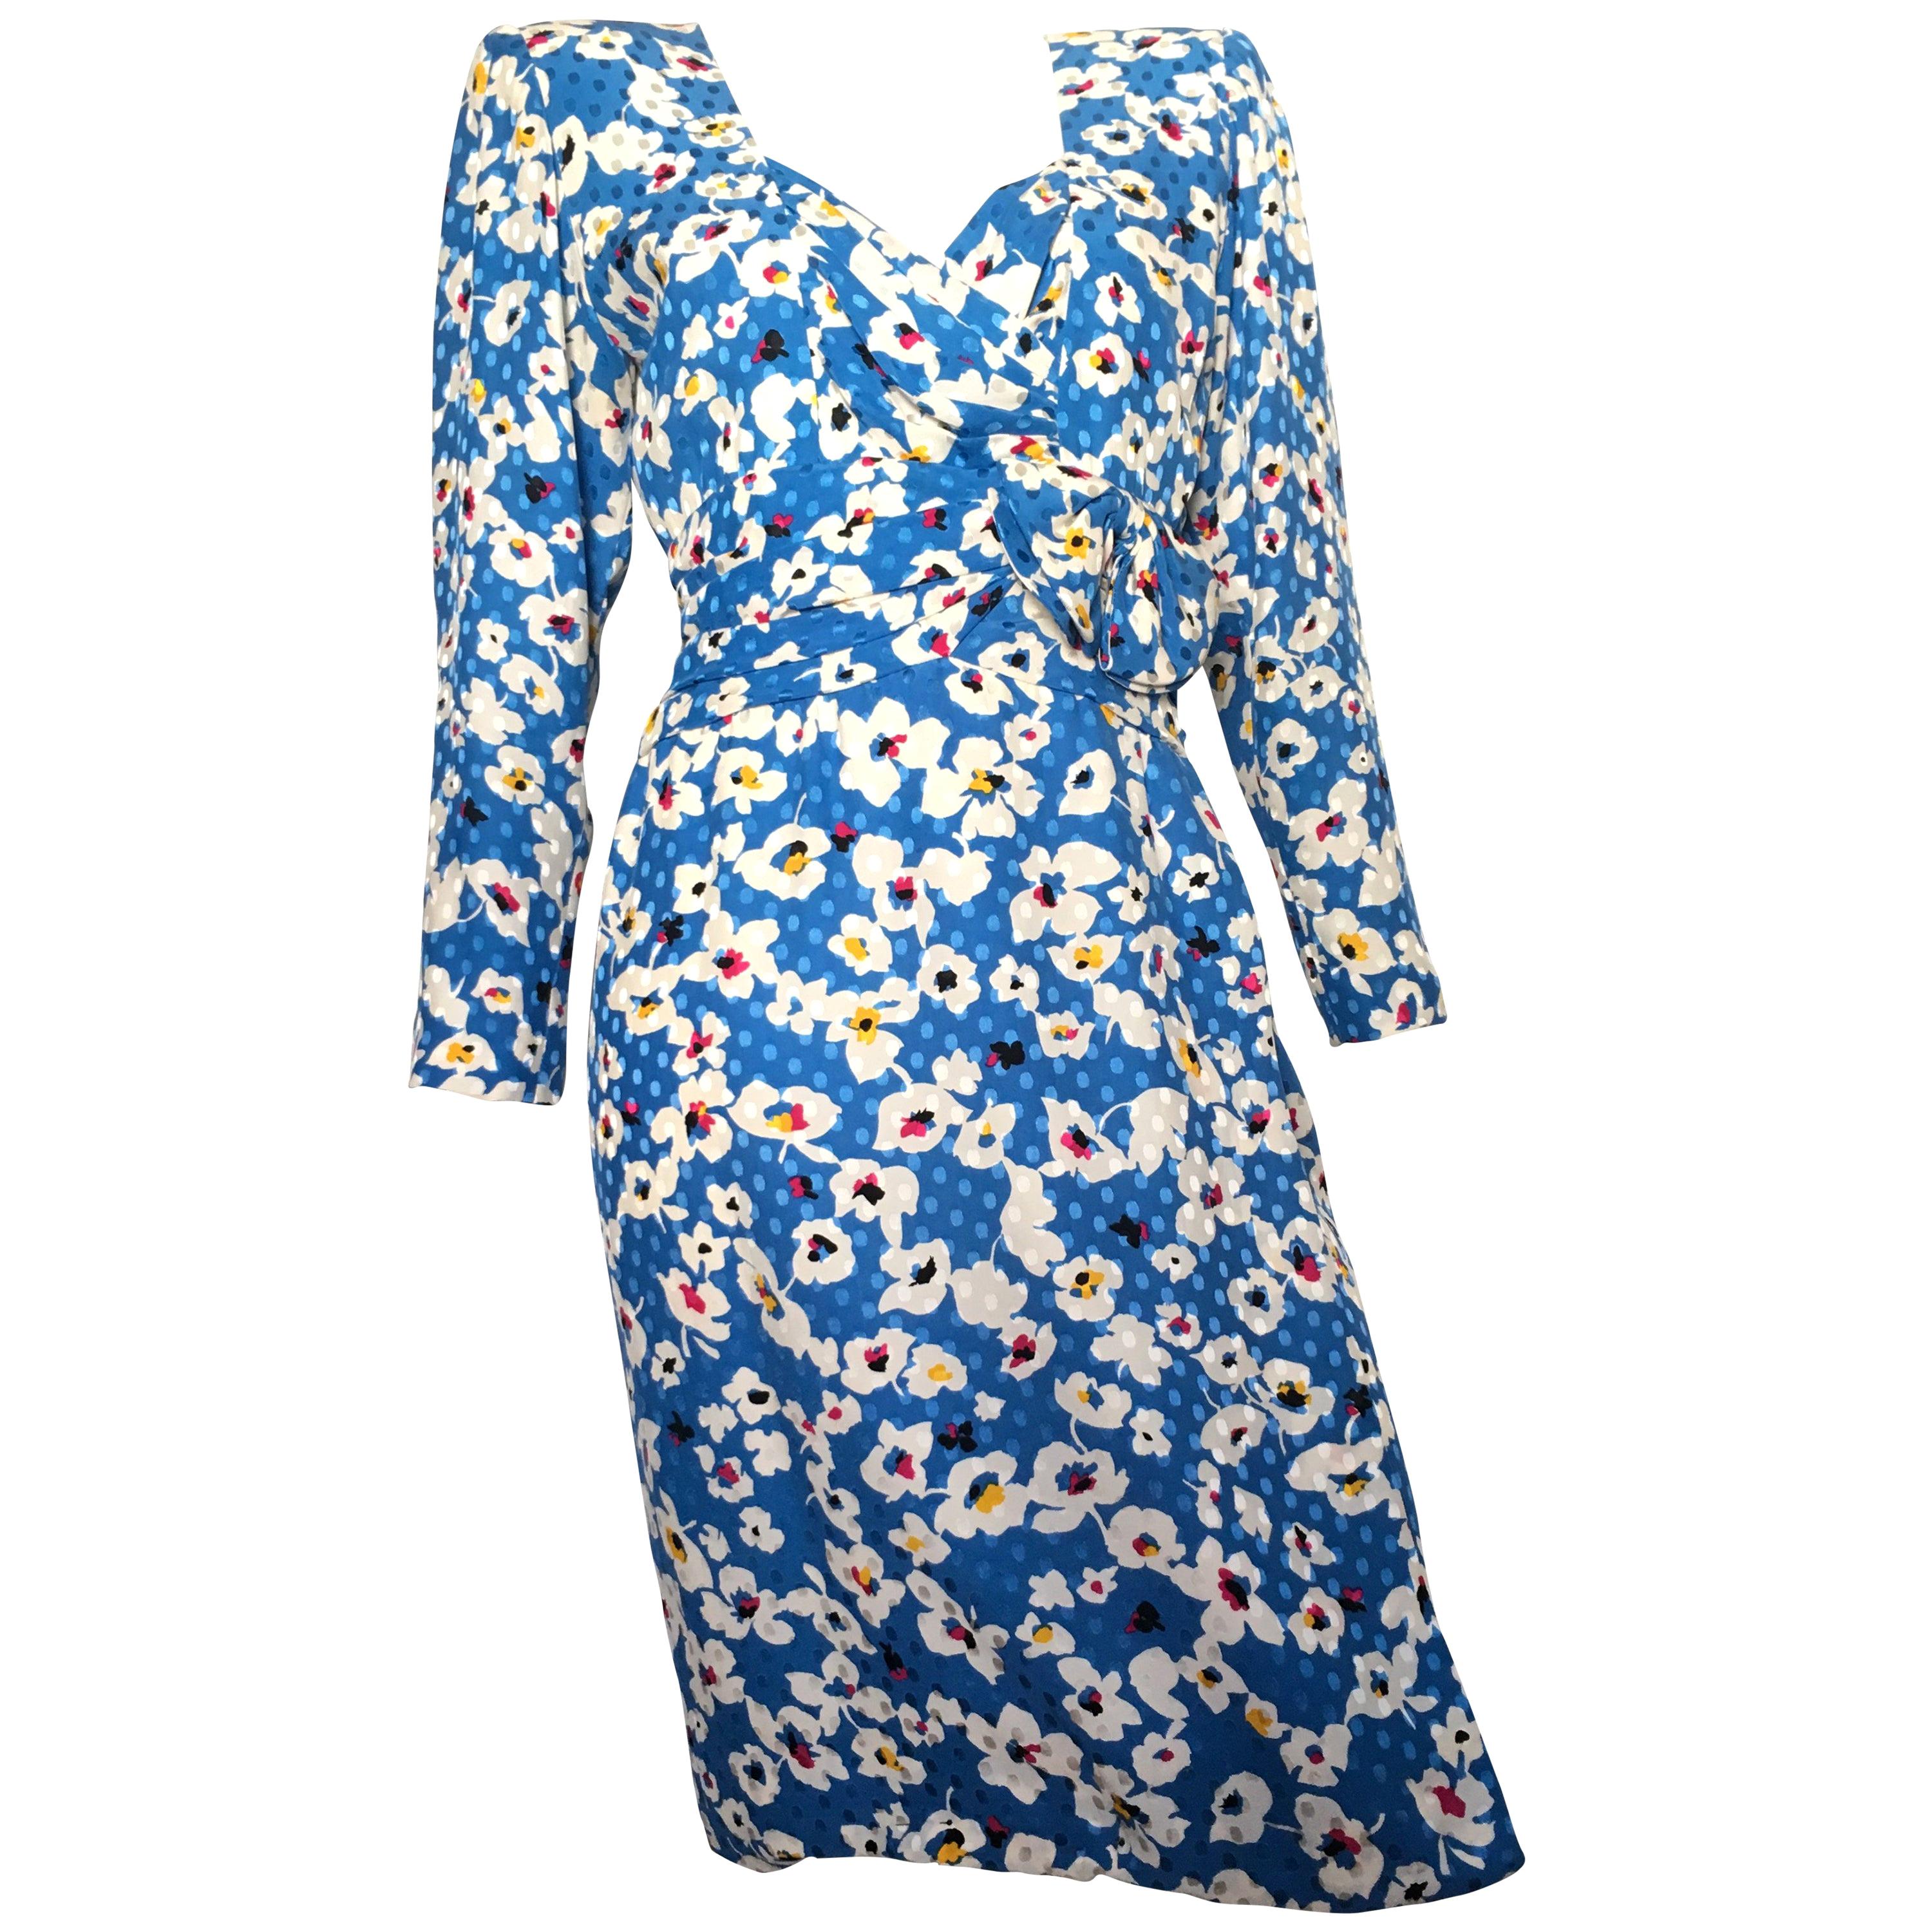 Nina Ricci 1980s Silk Floral Sheath Dress Size 4 / 6. For Sale